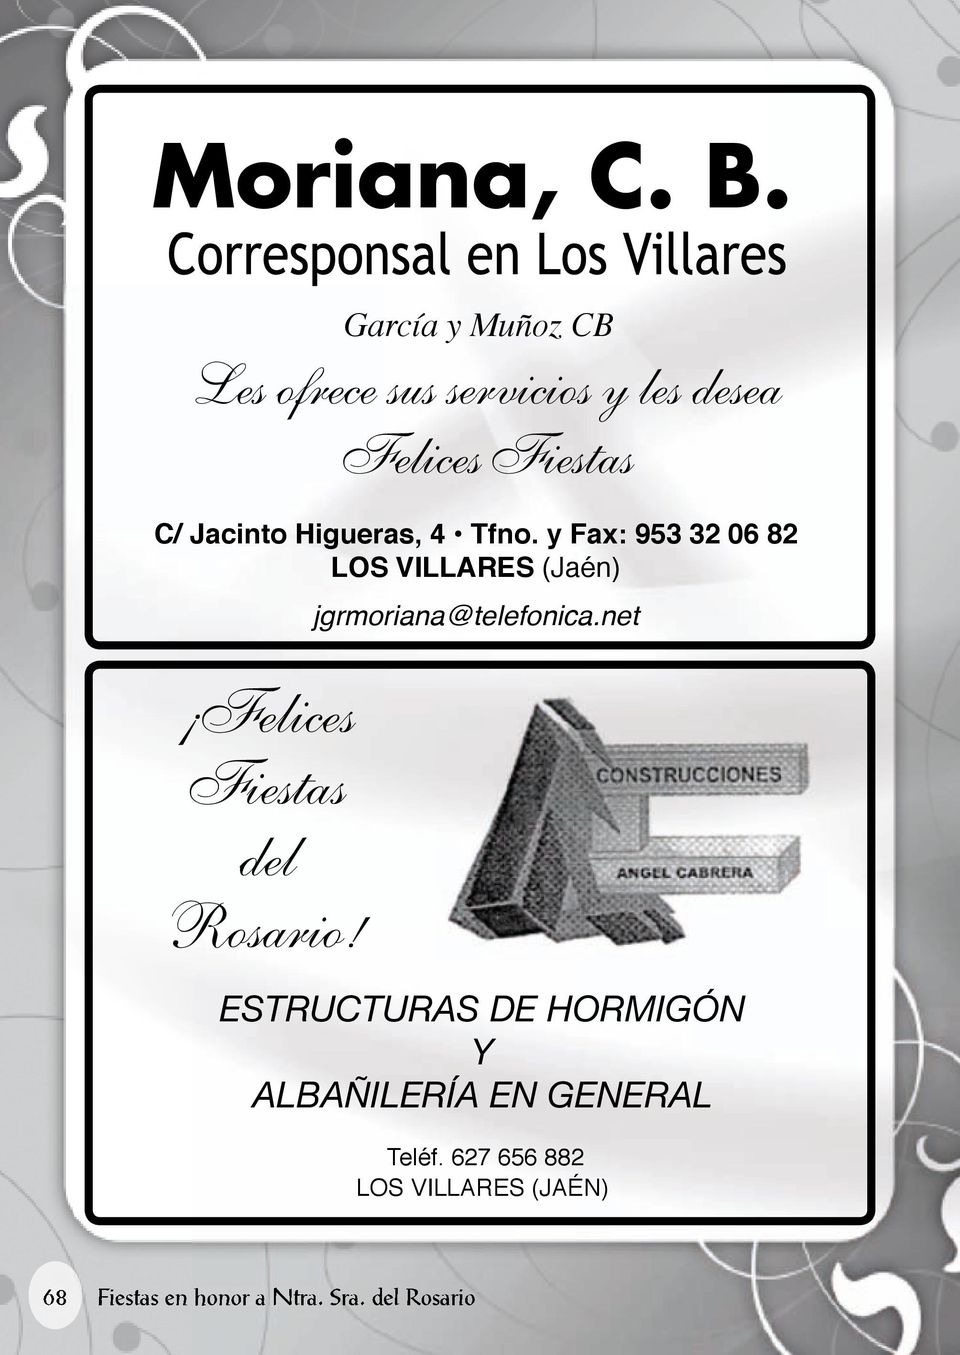 Higueras, 4 Tfno. y Fax: 953 32 06 82 los Villares (Jaén) Felices Fiestas del Rosario!